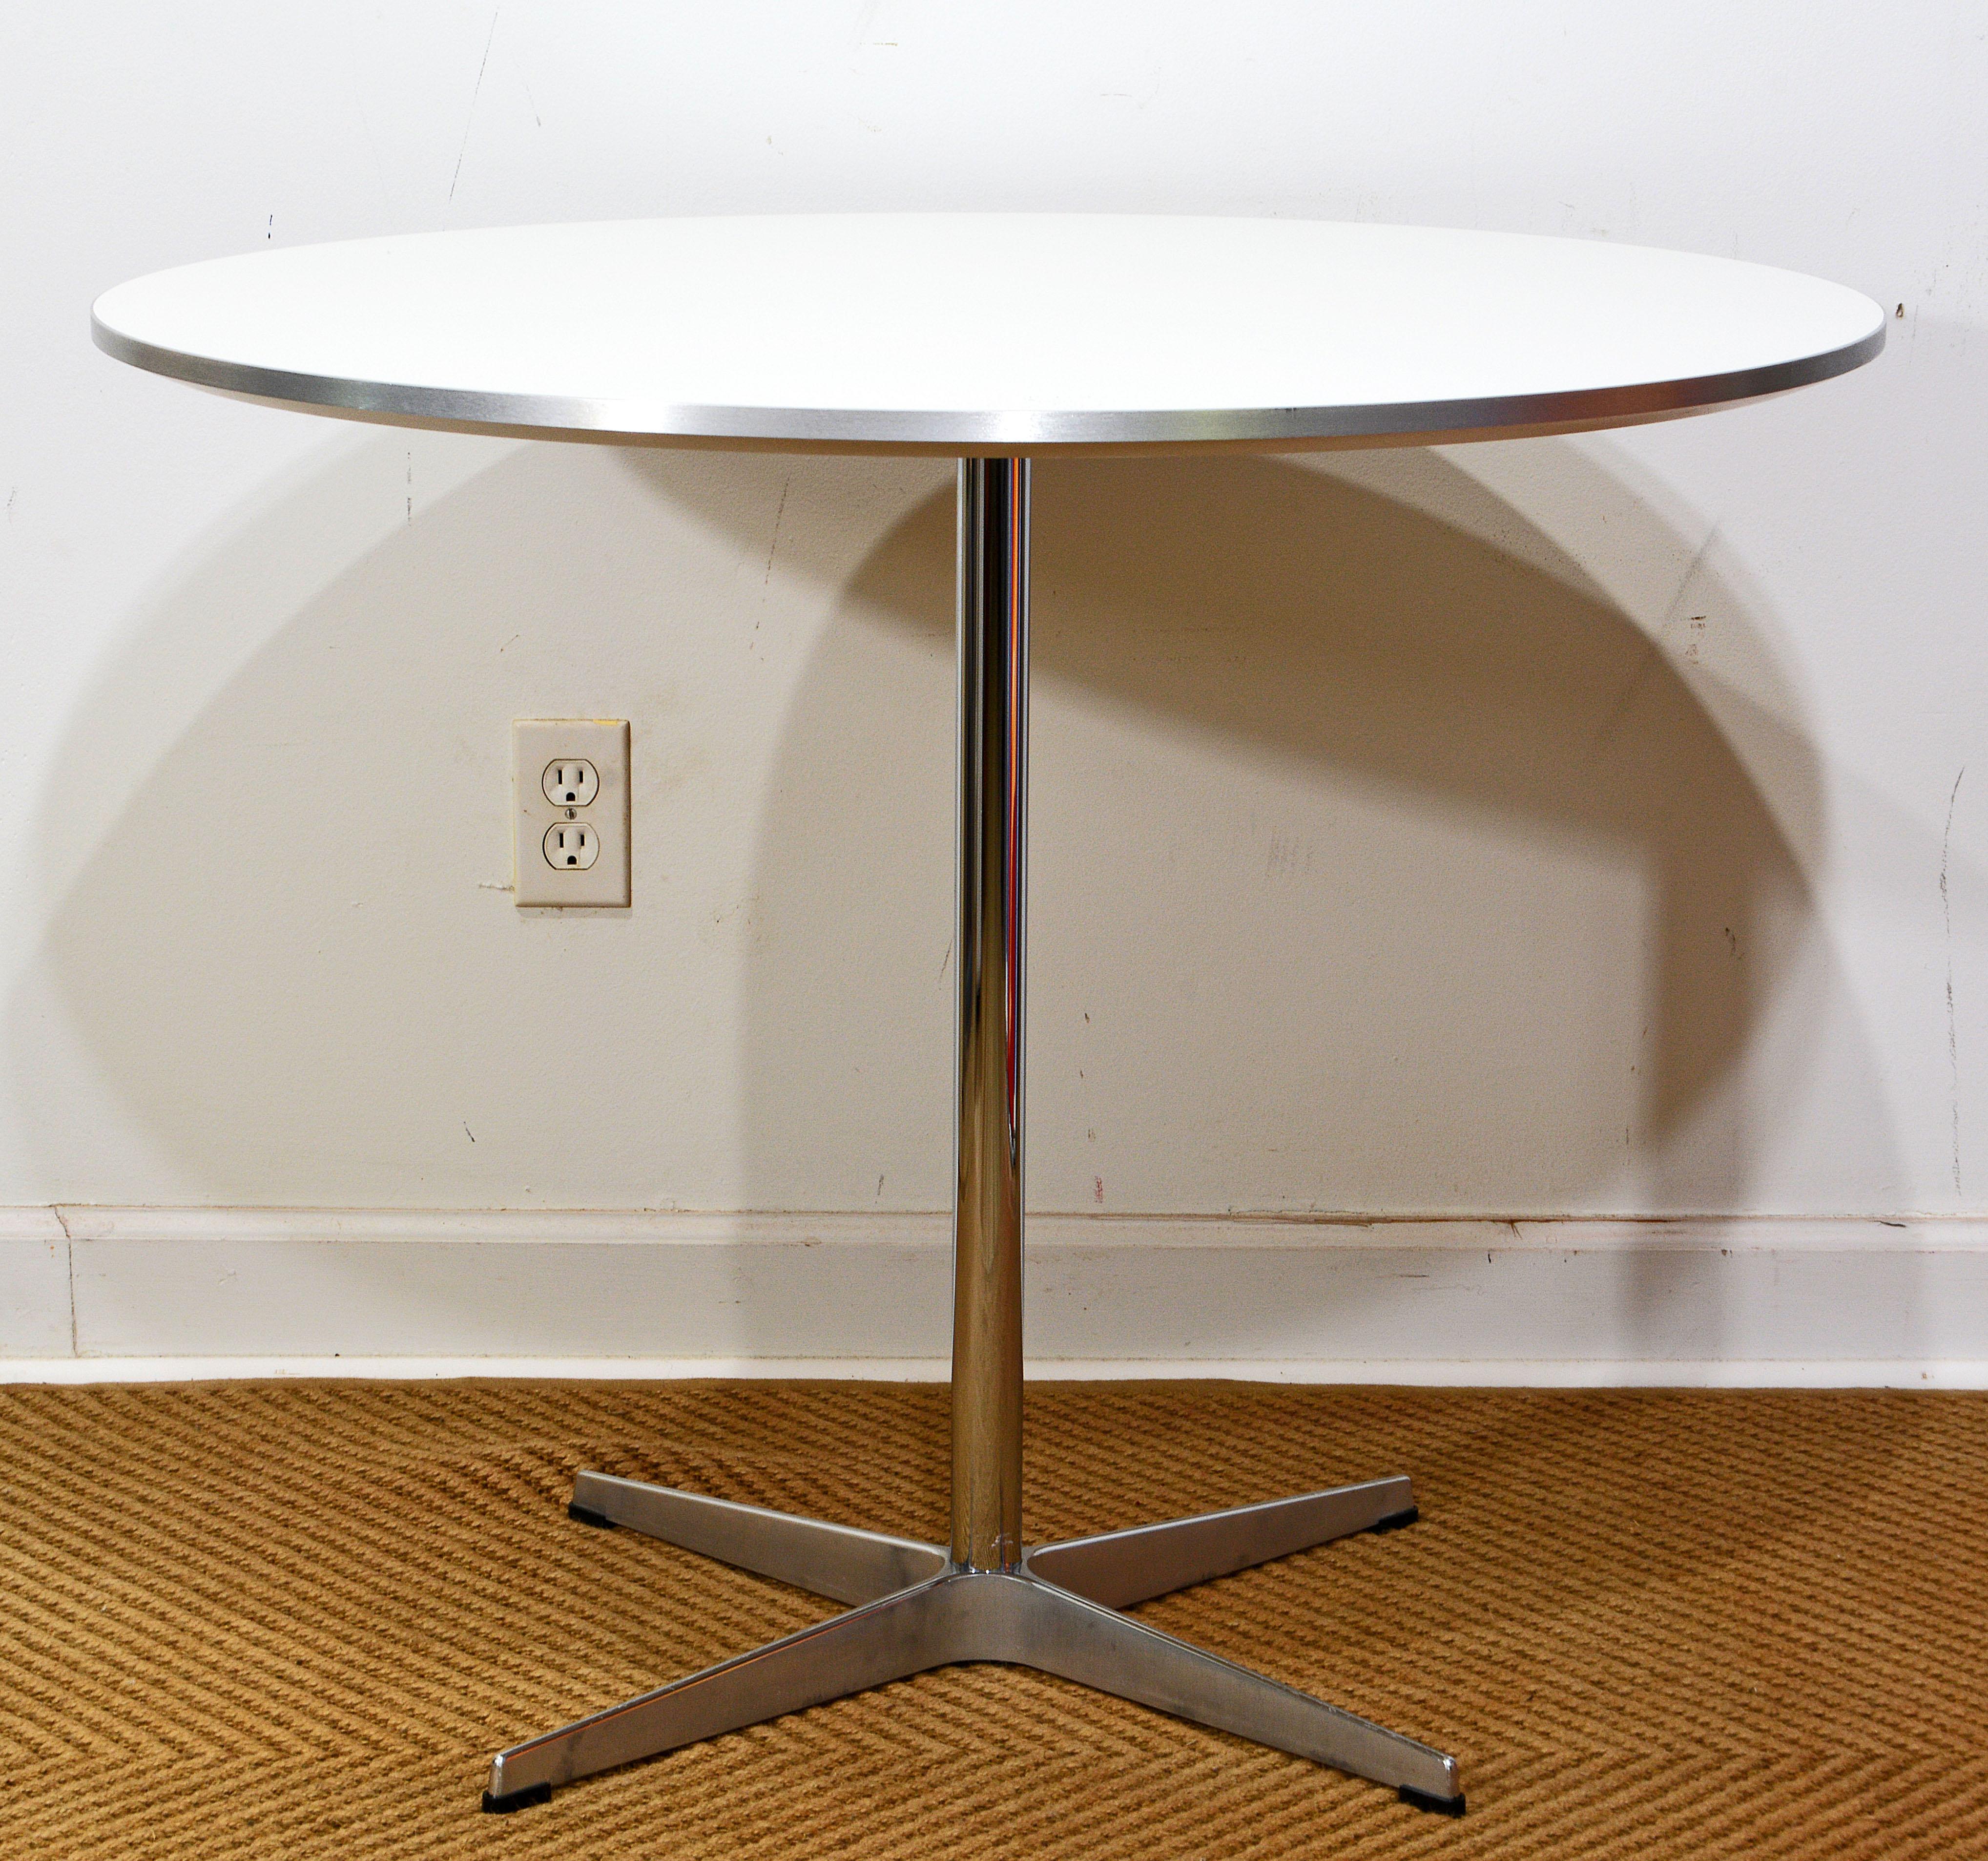 Ikonischer runder Café- oder Frühstückstisch, entworfen von Arne Jacobsen und hergestellt von Fritz Hansen im Jahr 2010. Der Tisch hat eine weiße, abgeschrägte Laminatplatte mit gebürsteter Aluminiumkante und eine polierte Aluminiumkonsole mit vier